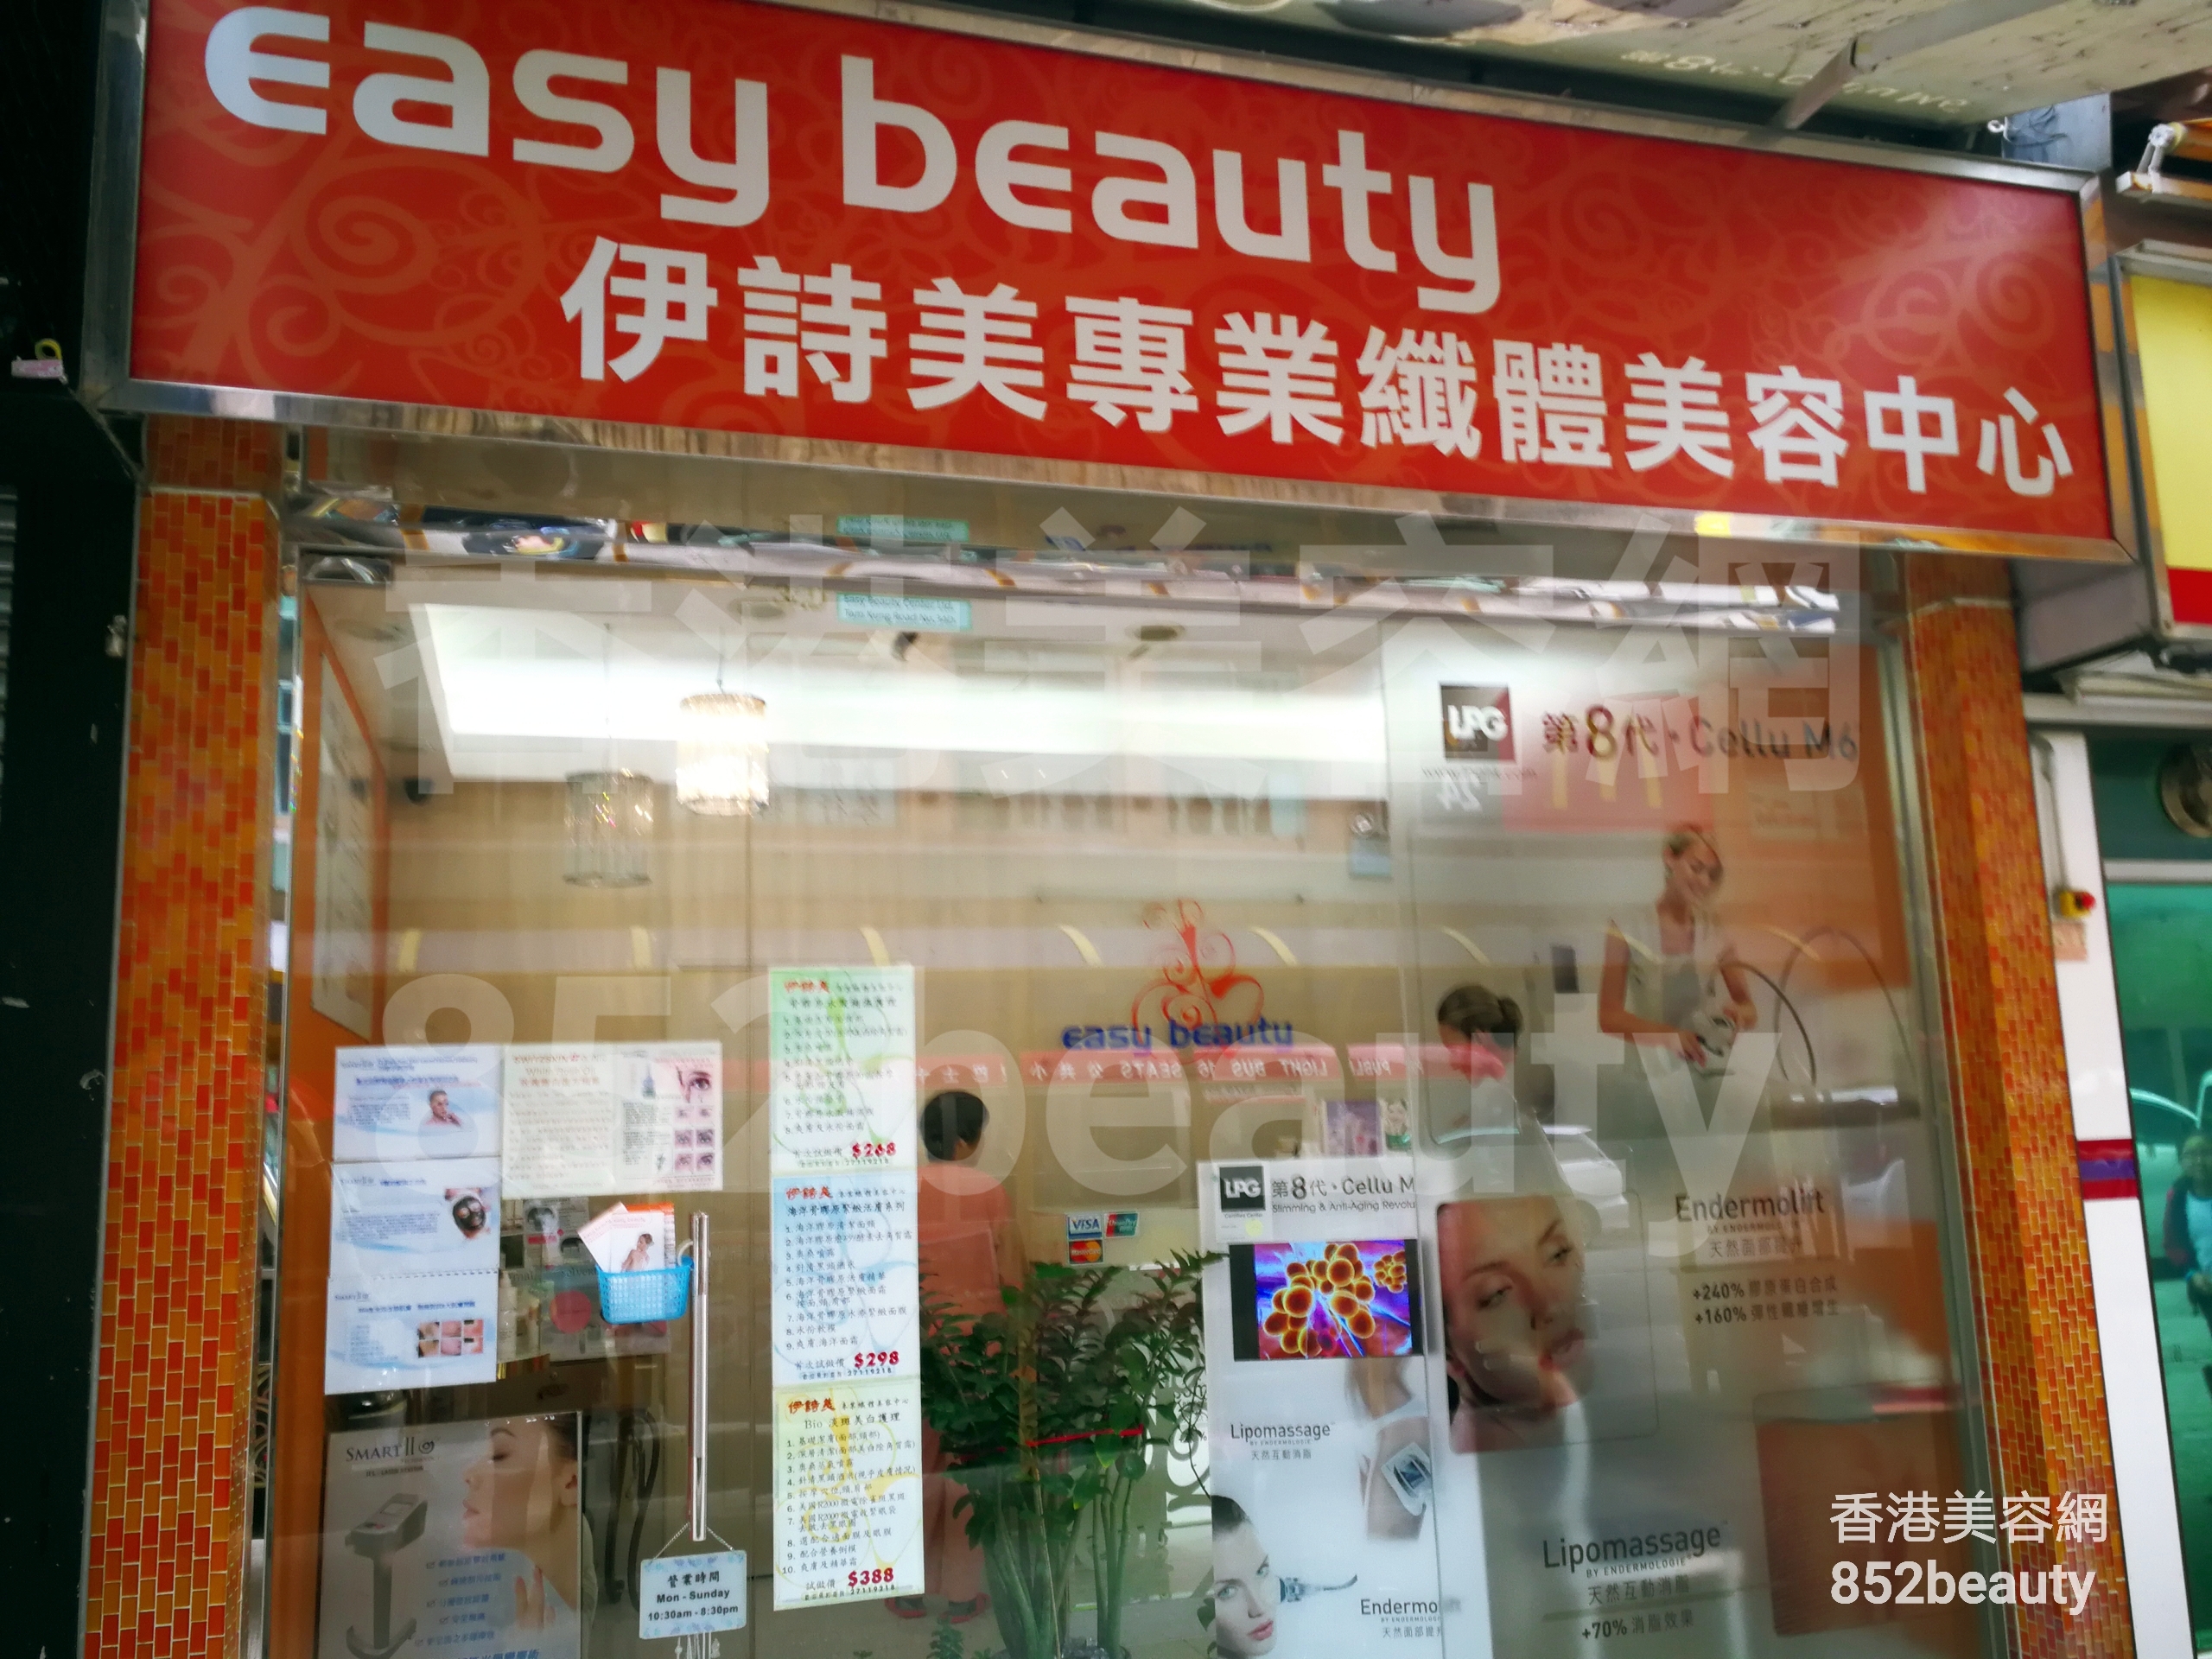 面部护理: Easy beauty 伊詩美專業纖體美容中心